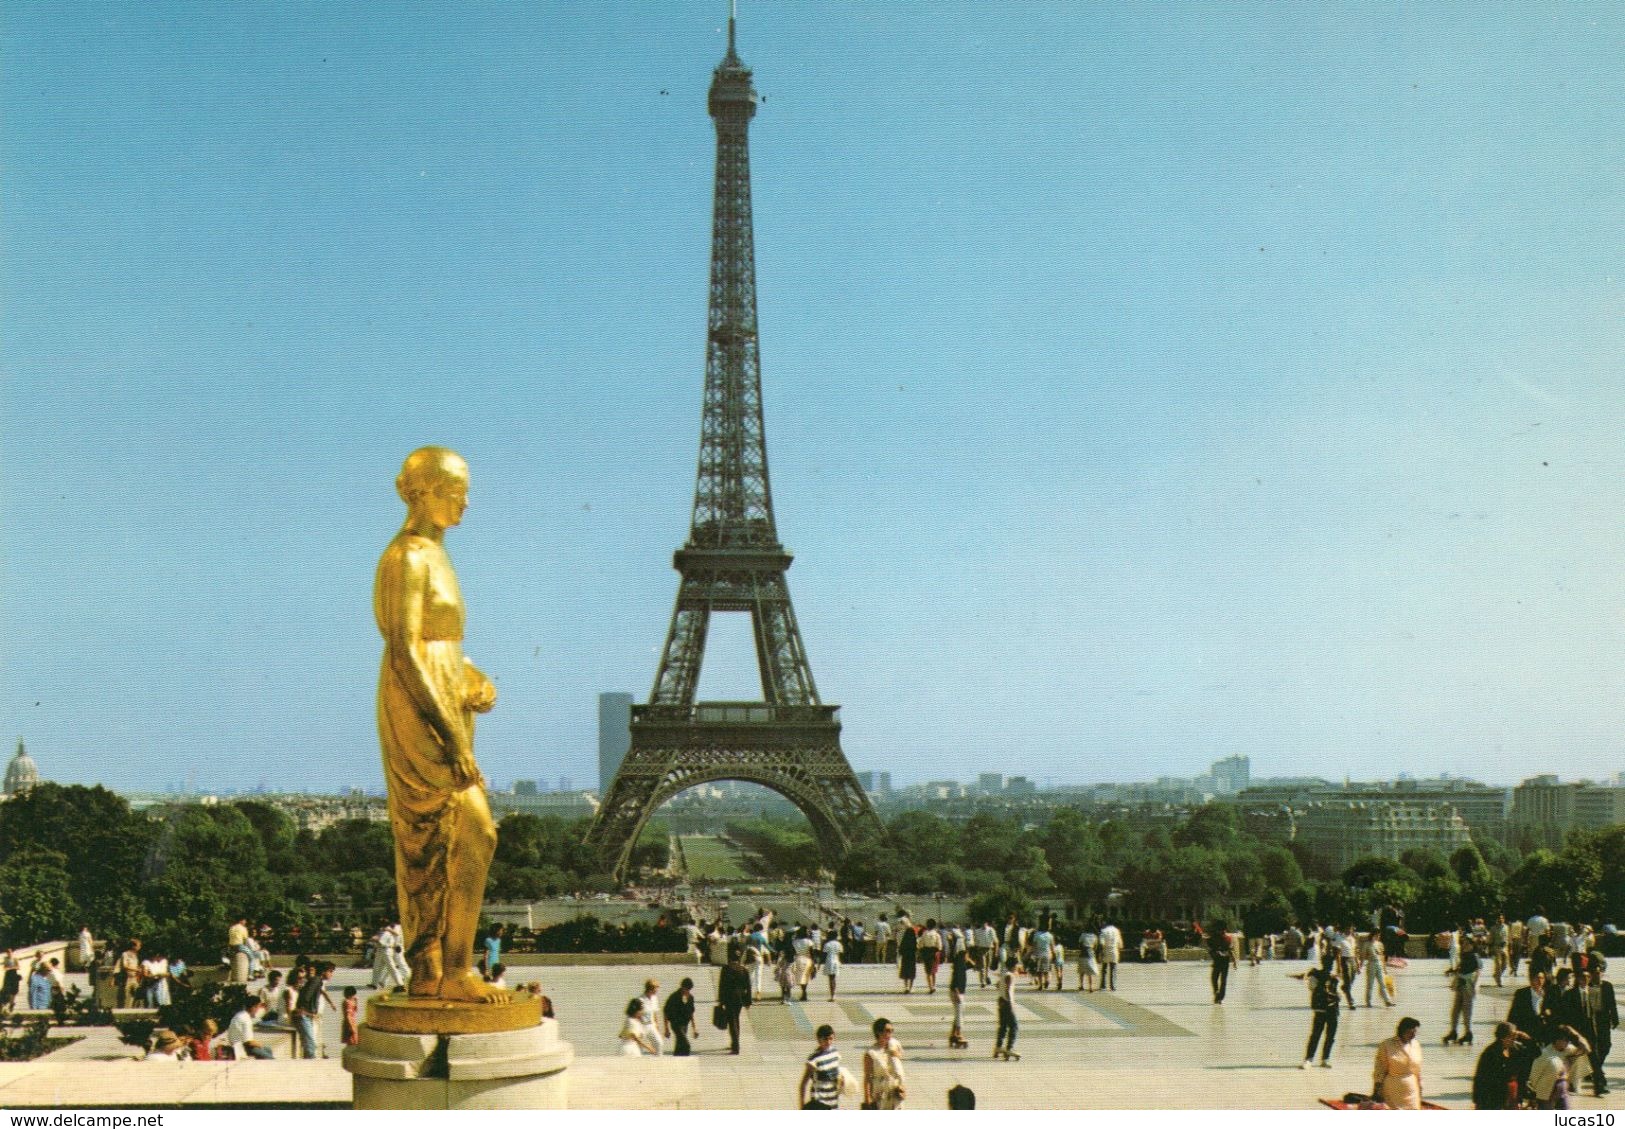 15  cartes des monuments de paris